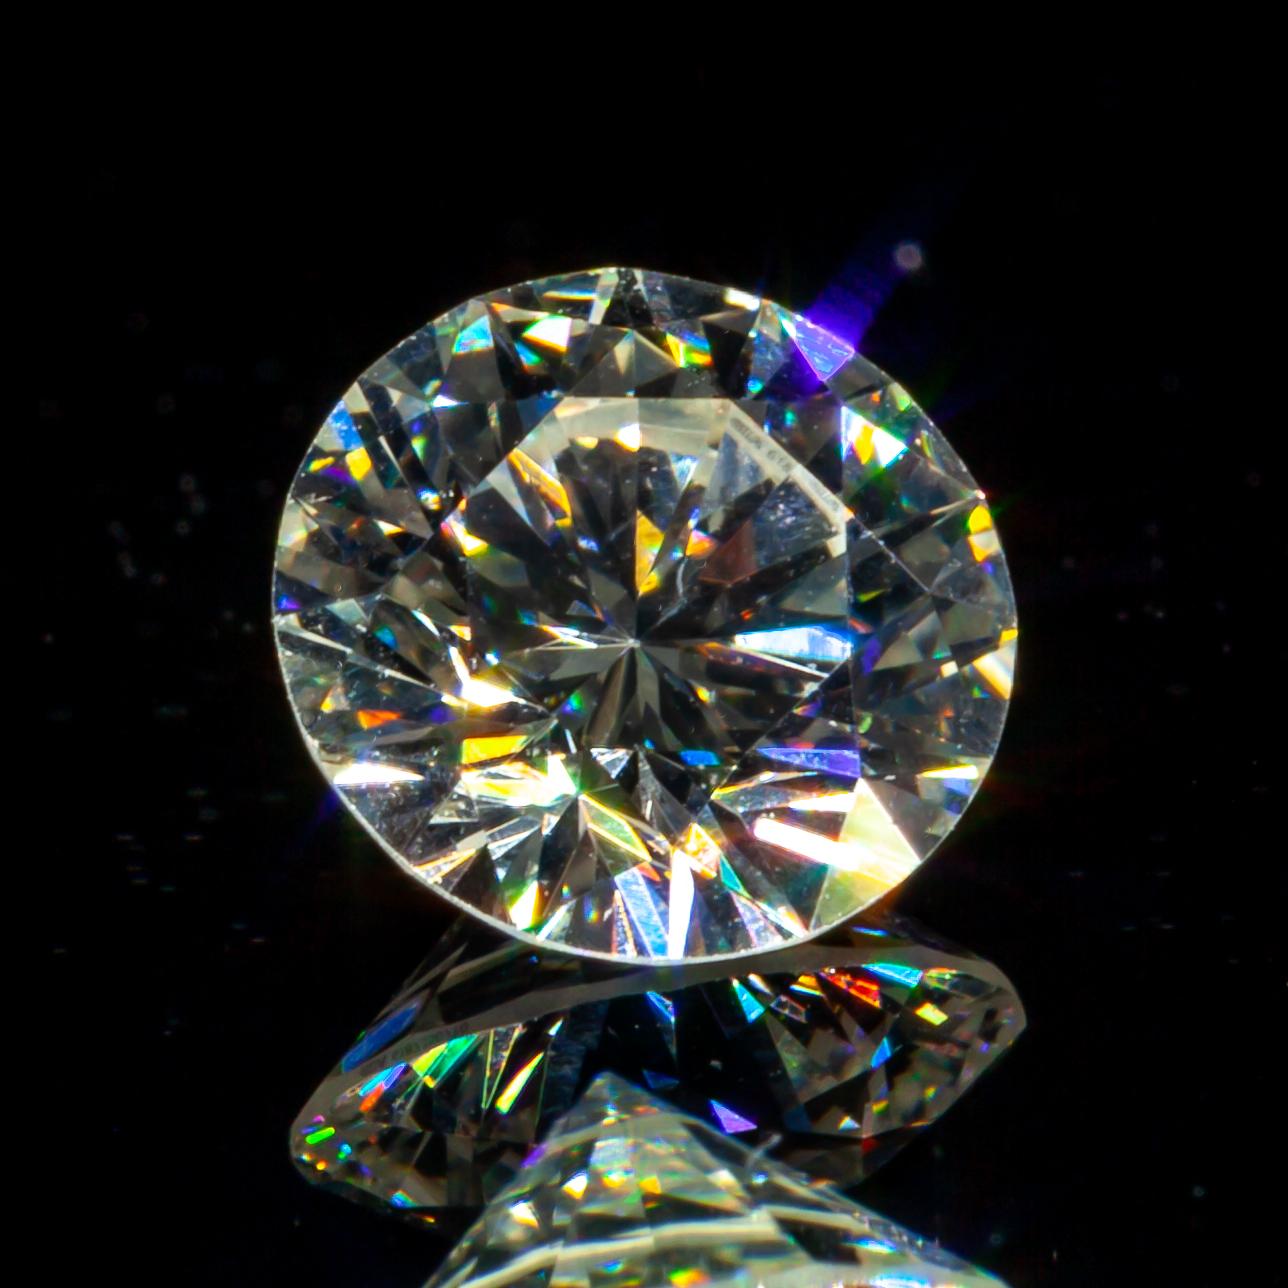 0,44 Karat Lose G/ SI1 Runder Brillantschliff Diamant GIA zertifiziert

Diamant Allgemeine Informationen
Diamantschliff:Runder Brillant
Abmessungen: 4.95  x  4.87  -  3.04 mm

Ergebnisse der Diamantklassifizierung
Karat Gewicht: 0,44
Farbe Note: